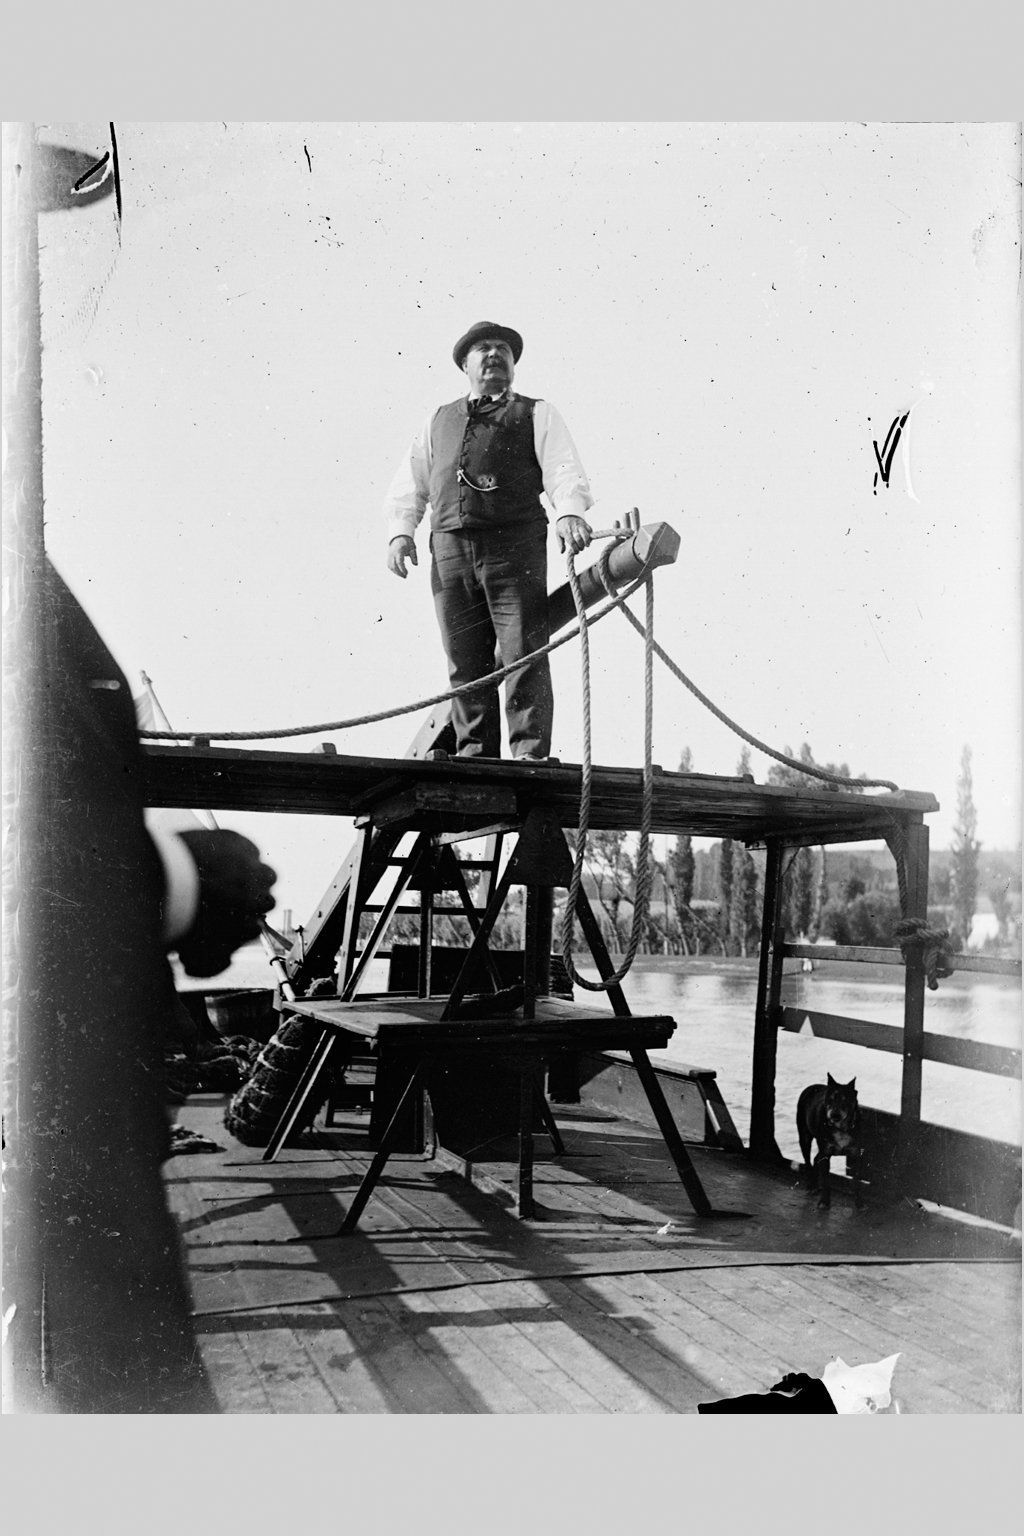 Voyage sur le Rhône à bord d'un bateau-à-roue : photo négative NB sur plaque de verre (vers 1900, cote : 10PH/204)